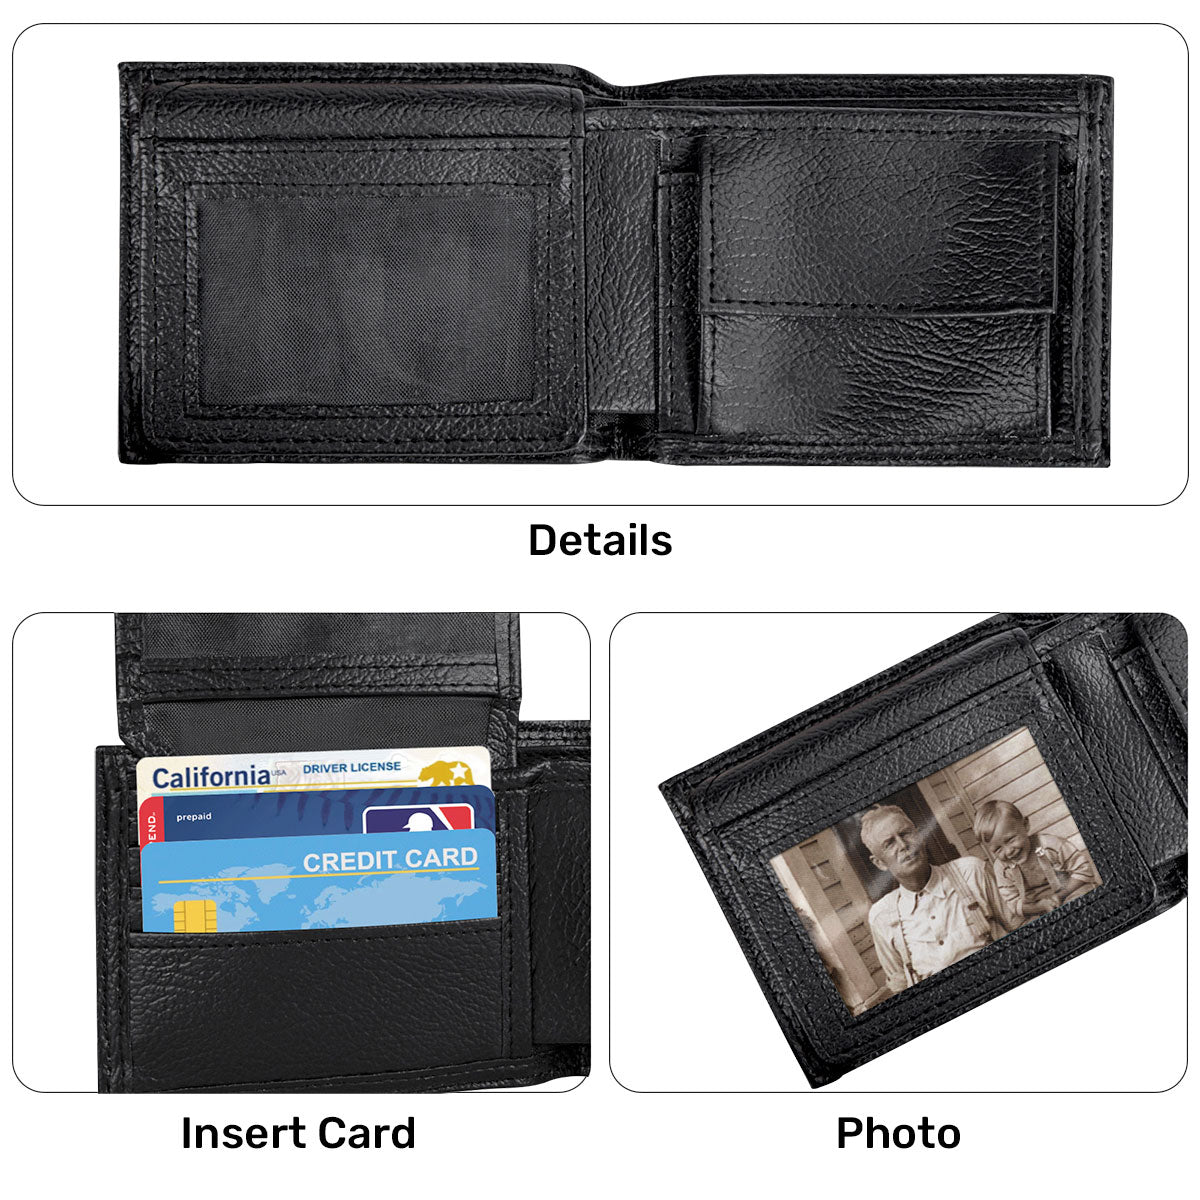 Man Of God | Personalized Folded Wallet For Men JSLFWN37